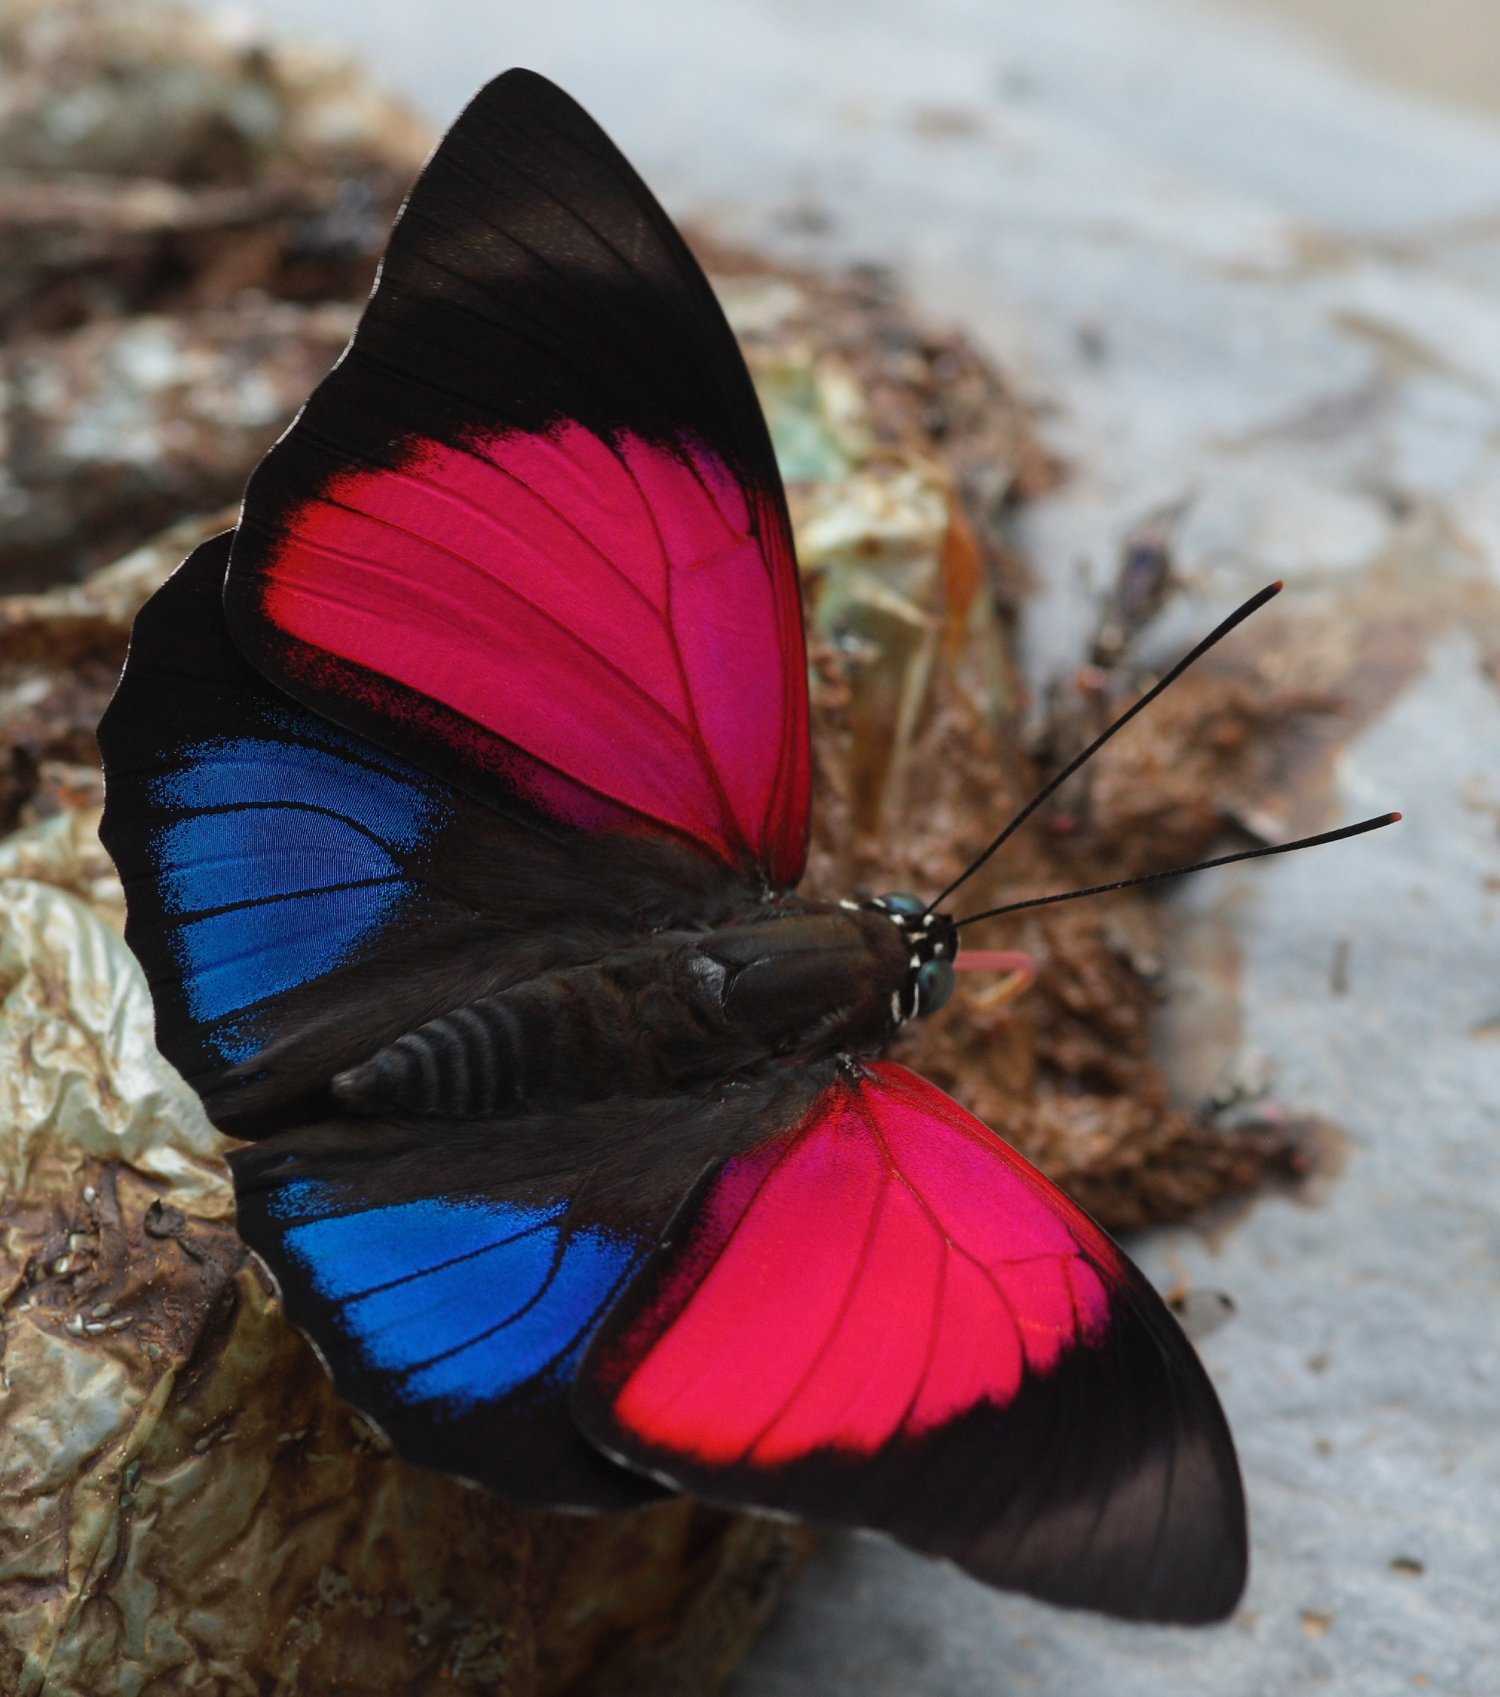 Популярные виды бабочек, их названия и описание